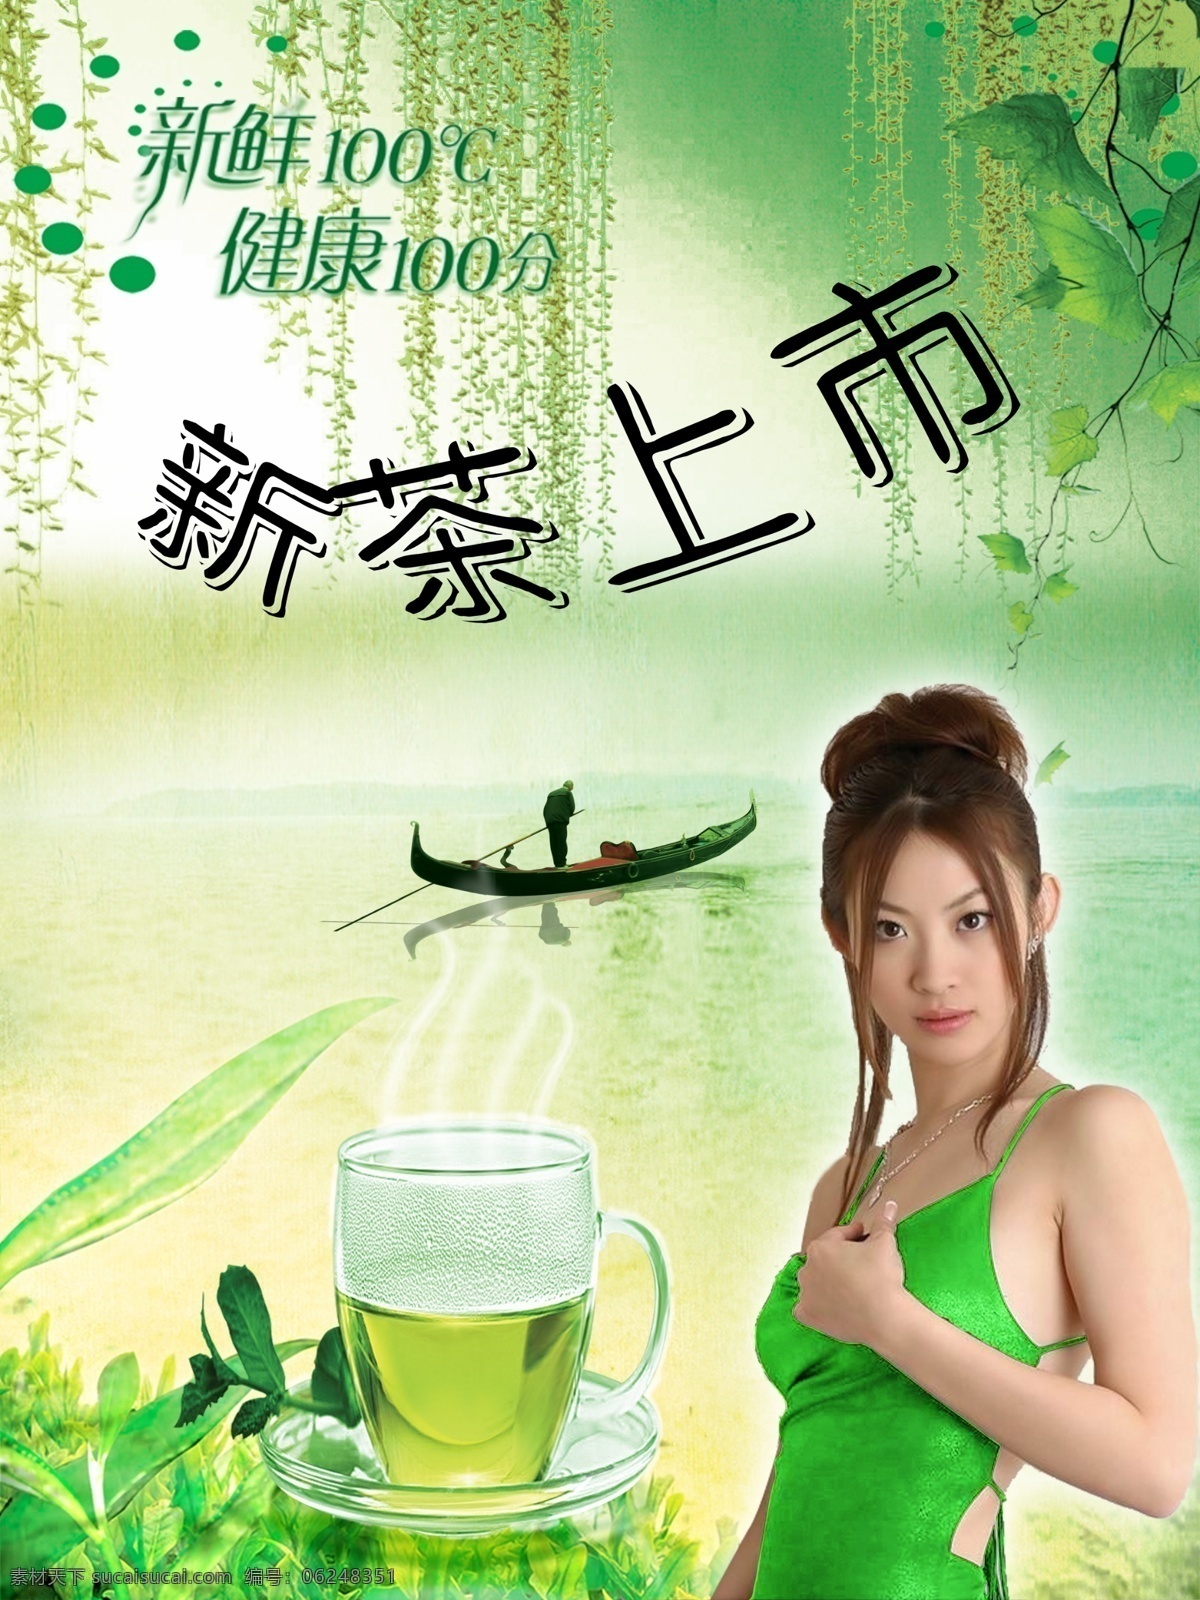 新茶上市 美女 渔夫 茶叶 茶杯 河 叶子 广告设计模板 源文件库